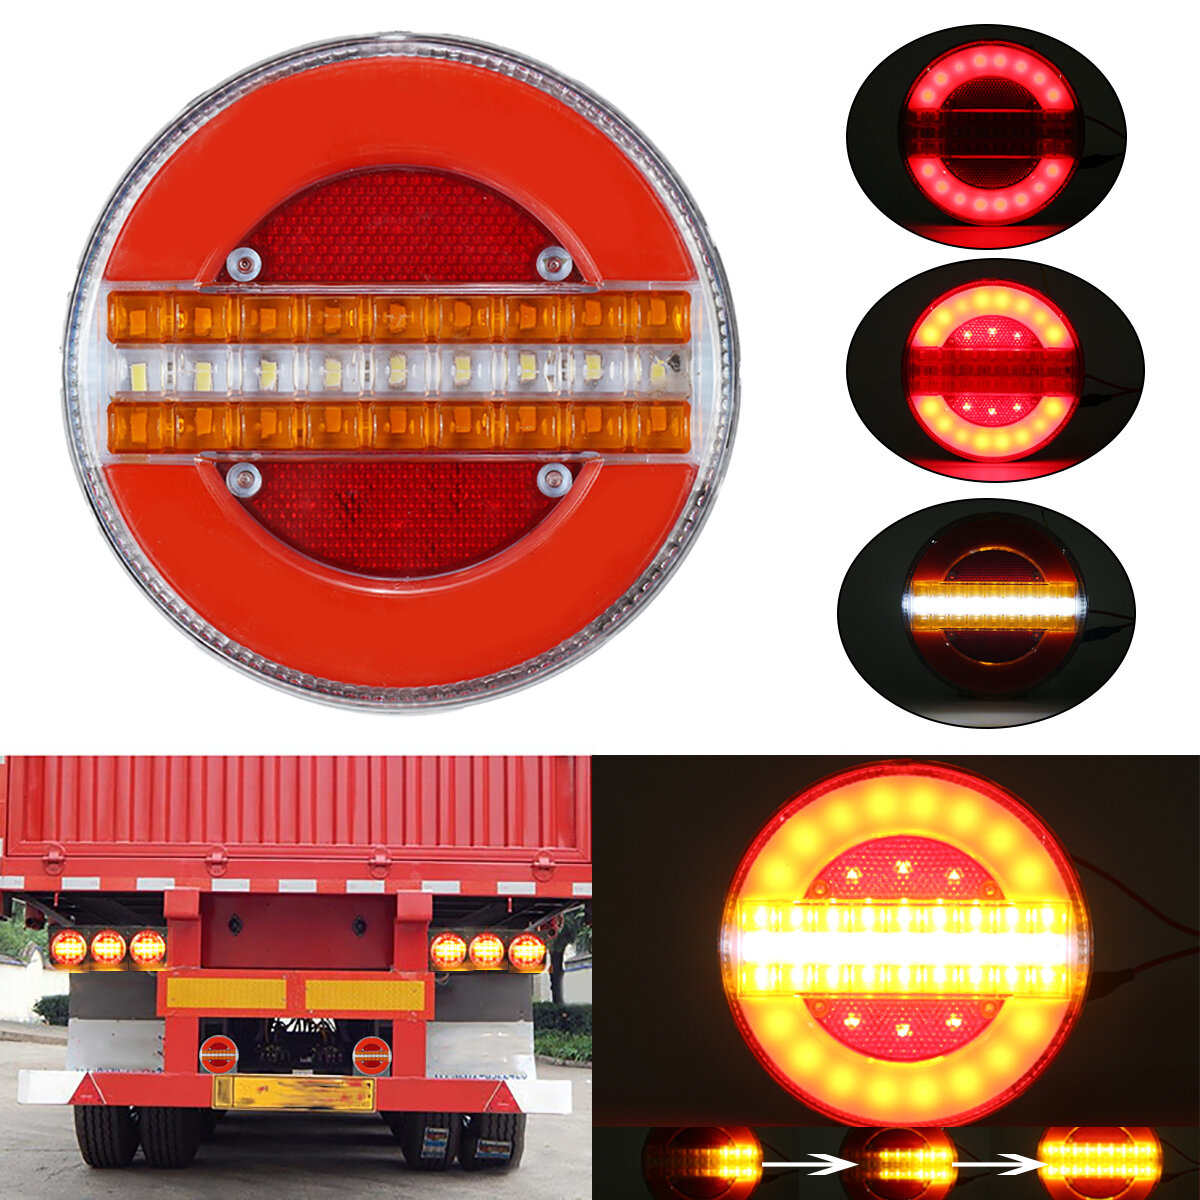 2 STKS 24 V LED Hamburger Achterlichten Voor Vrachtwagen Vrachtwagen Van Caravan Bus Camper